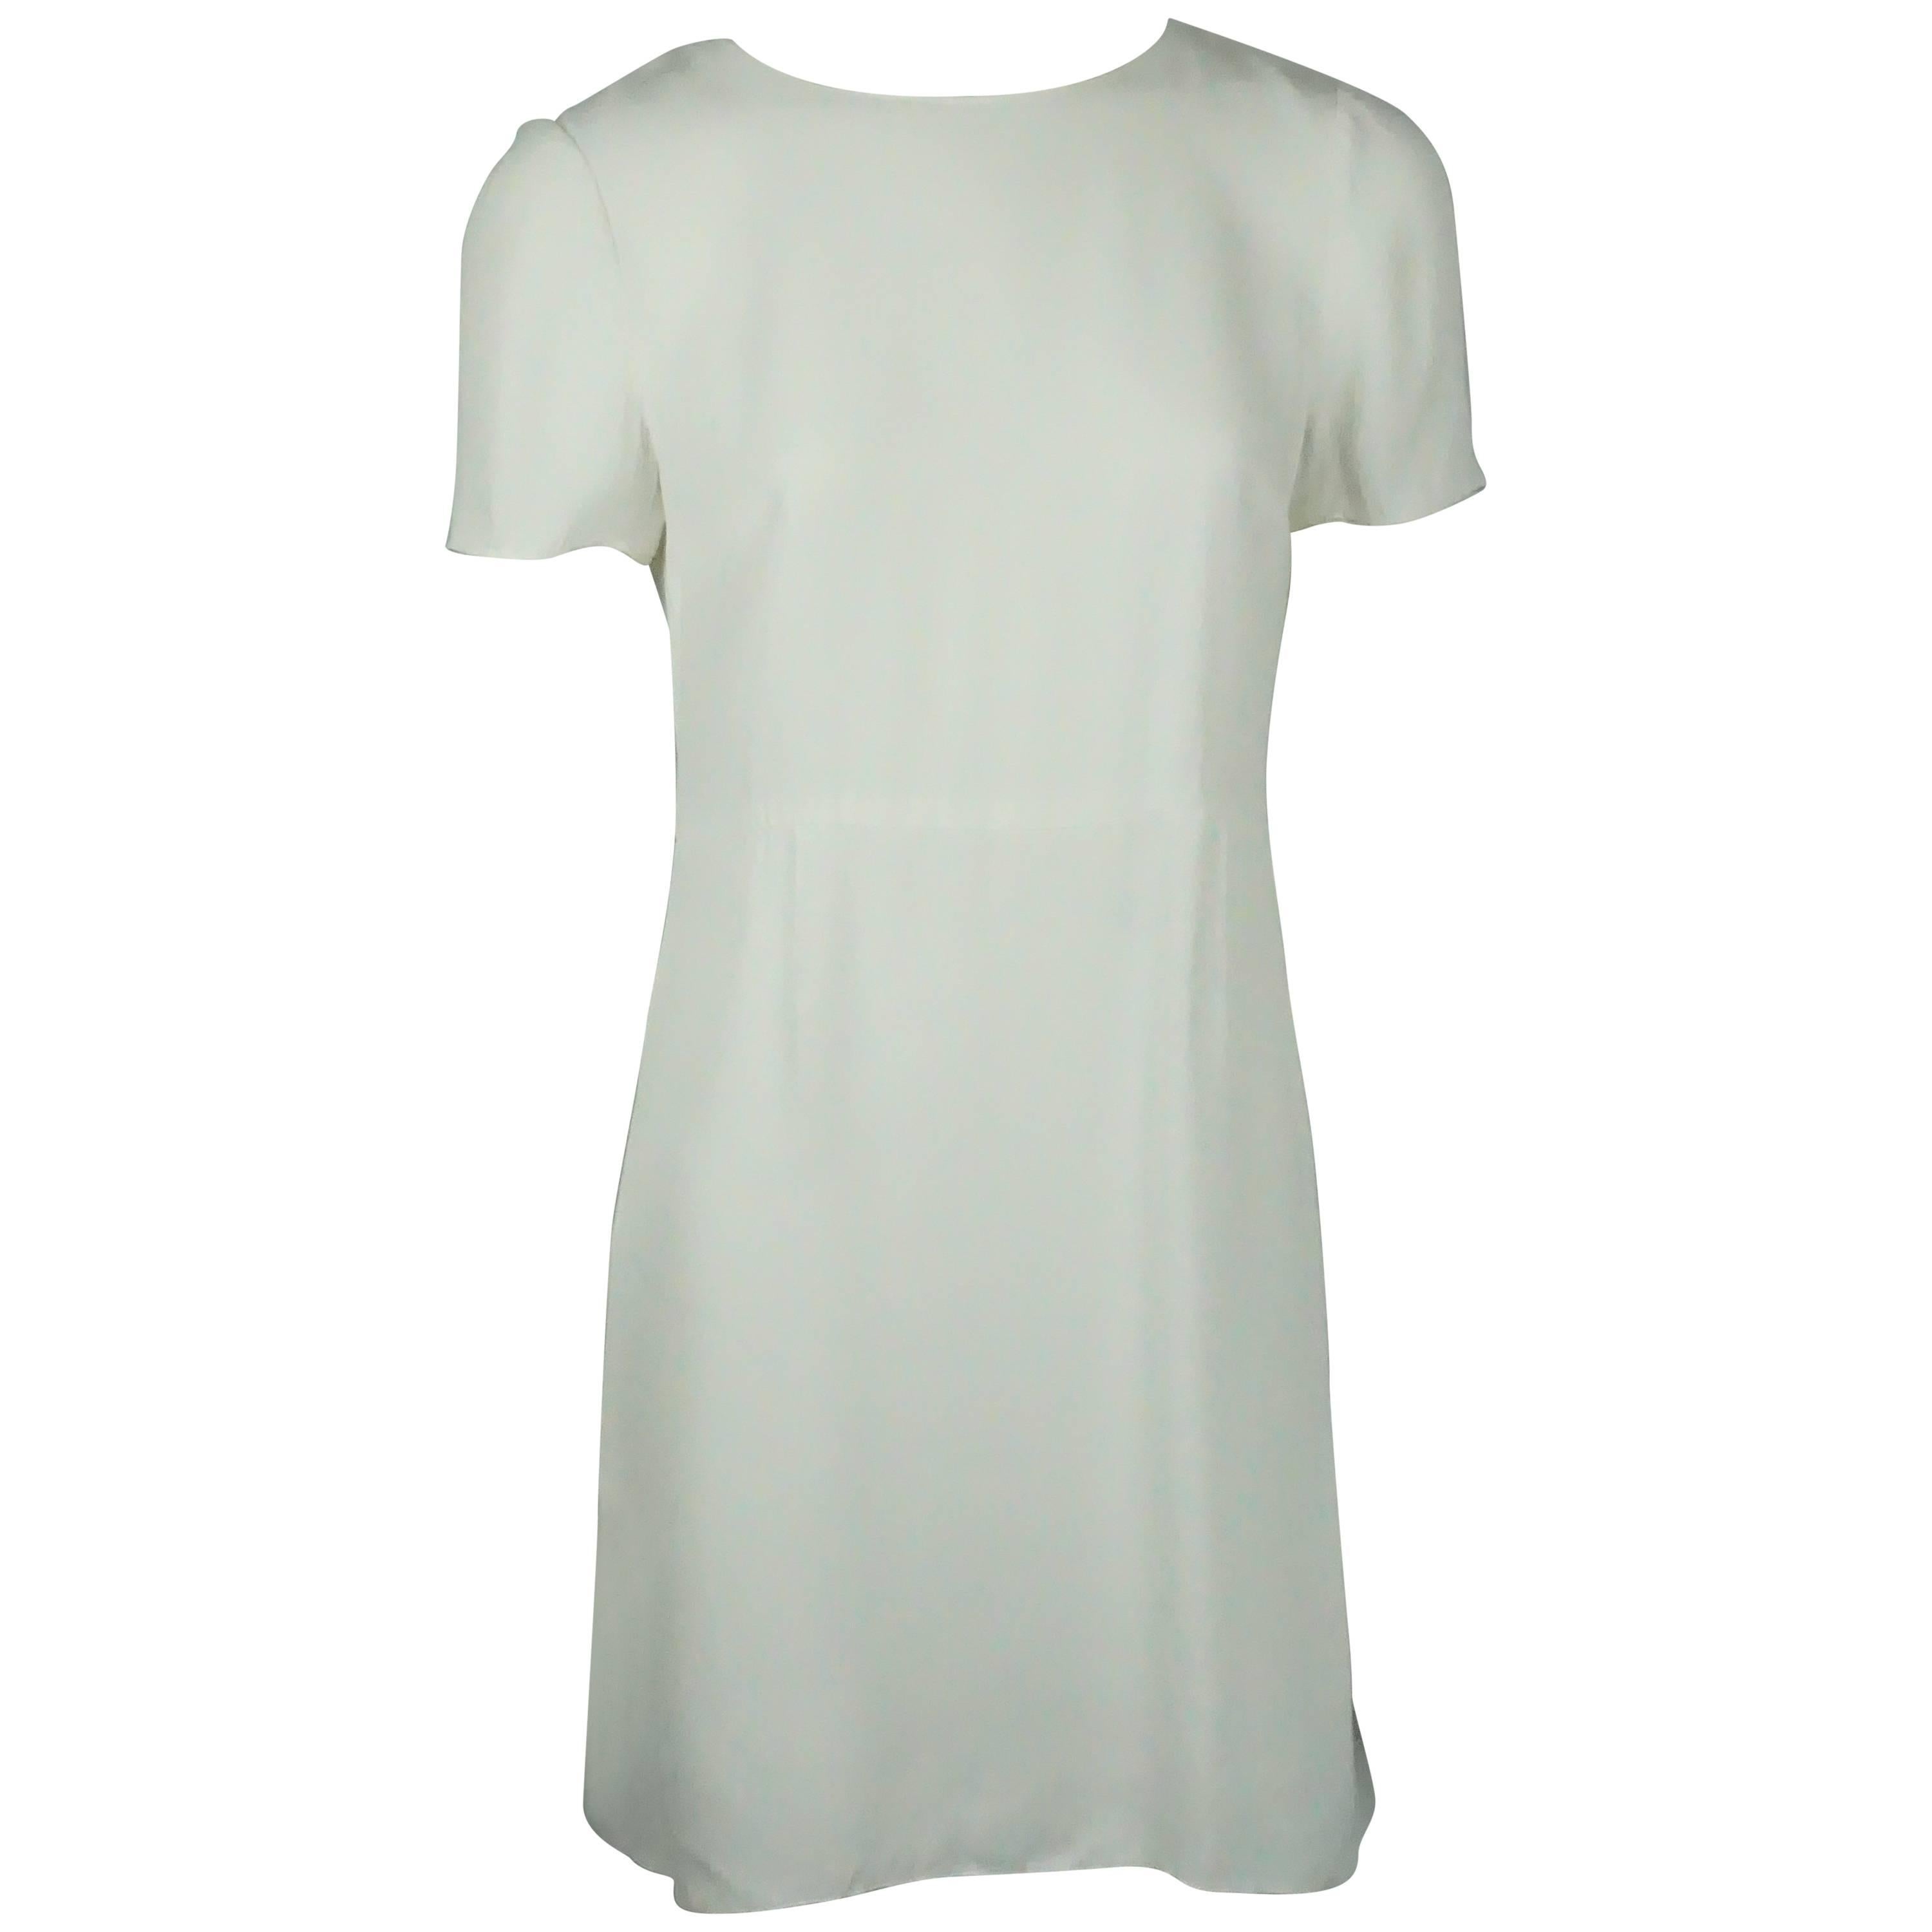 white silk dress short